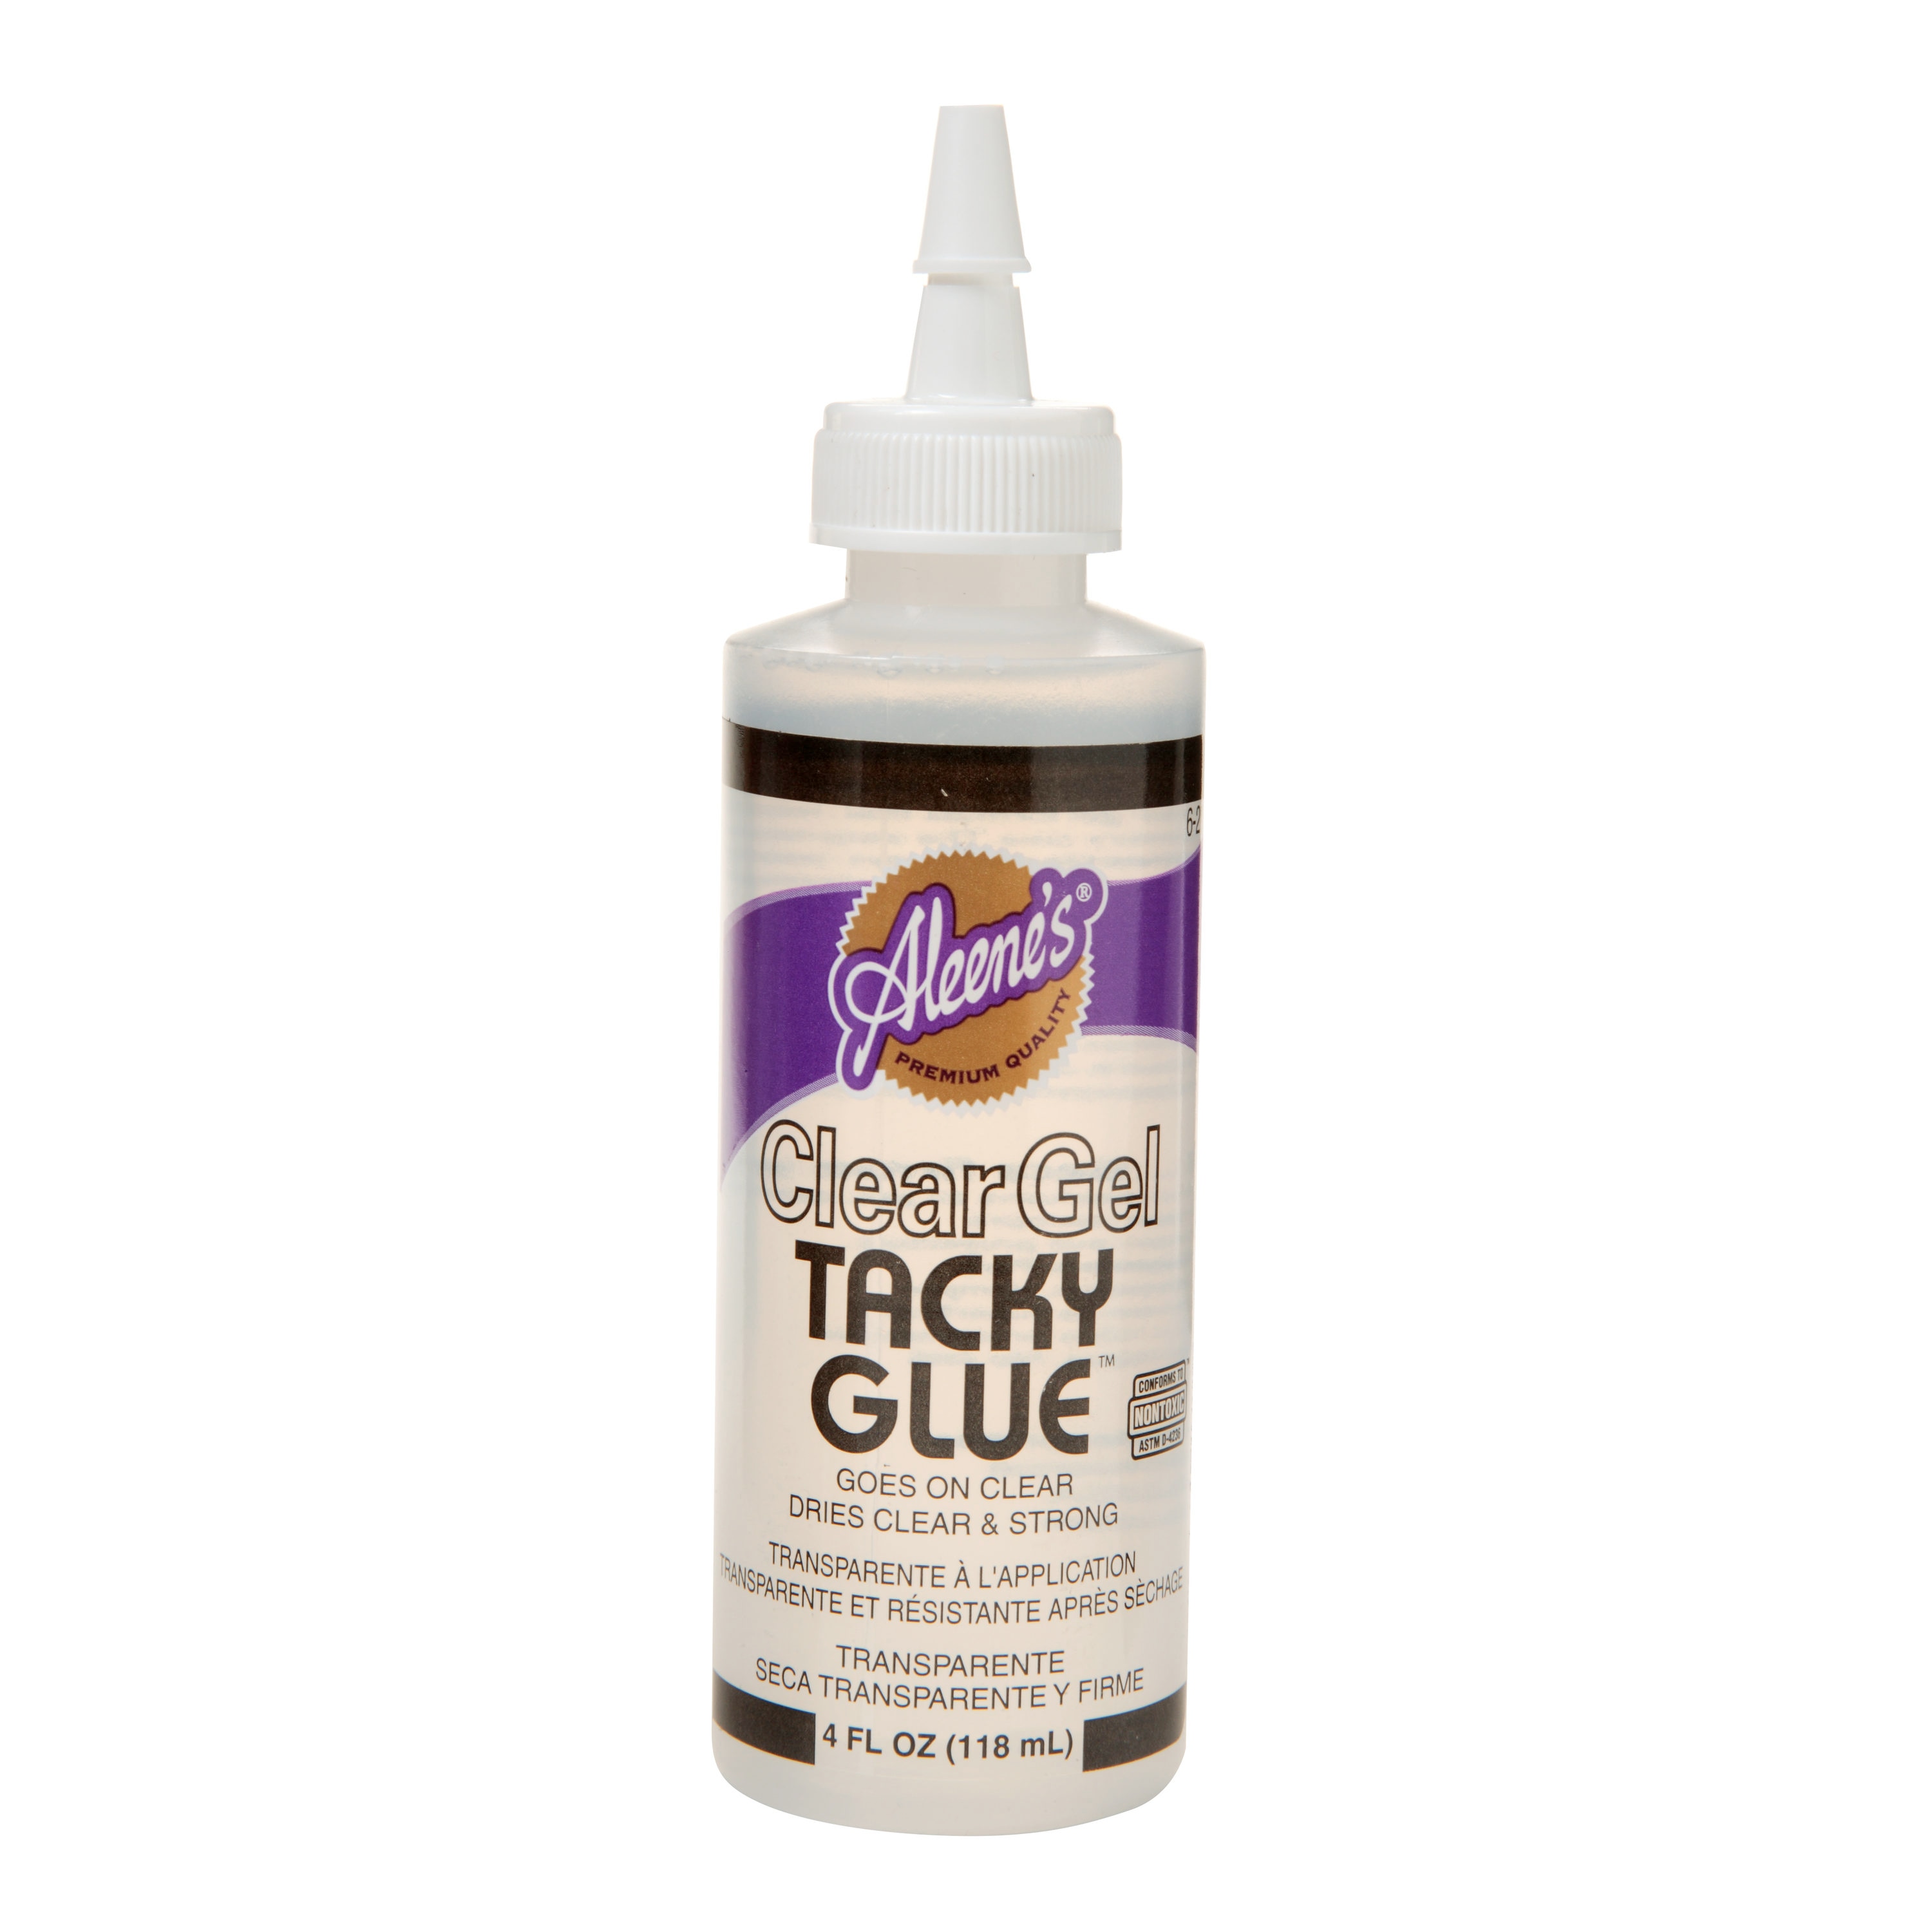 Aleene's Quick Dry Tacky Glue, 4 FL OZ - 3 Pack, Multi 4 FL OZ - 3 Pack Glue